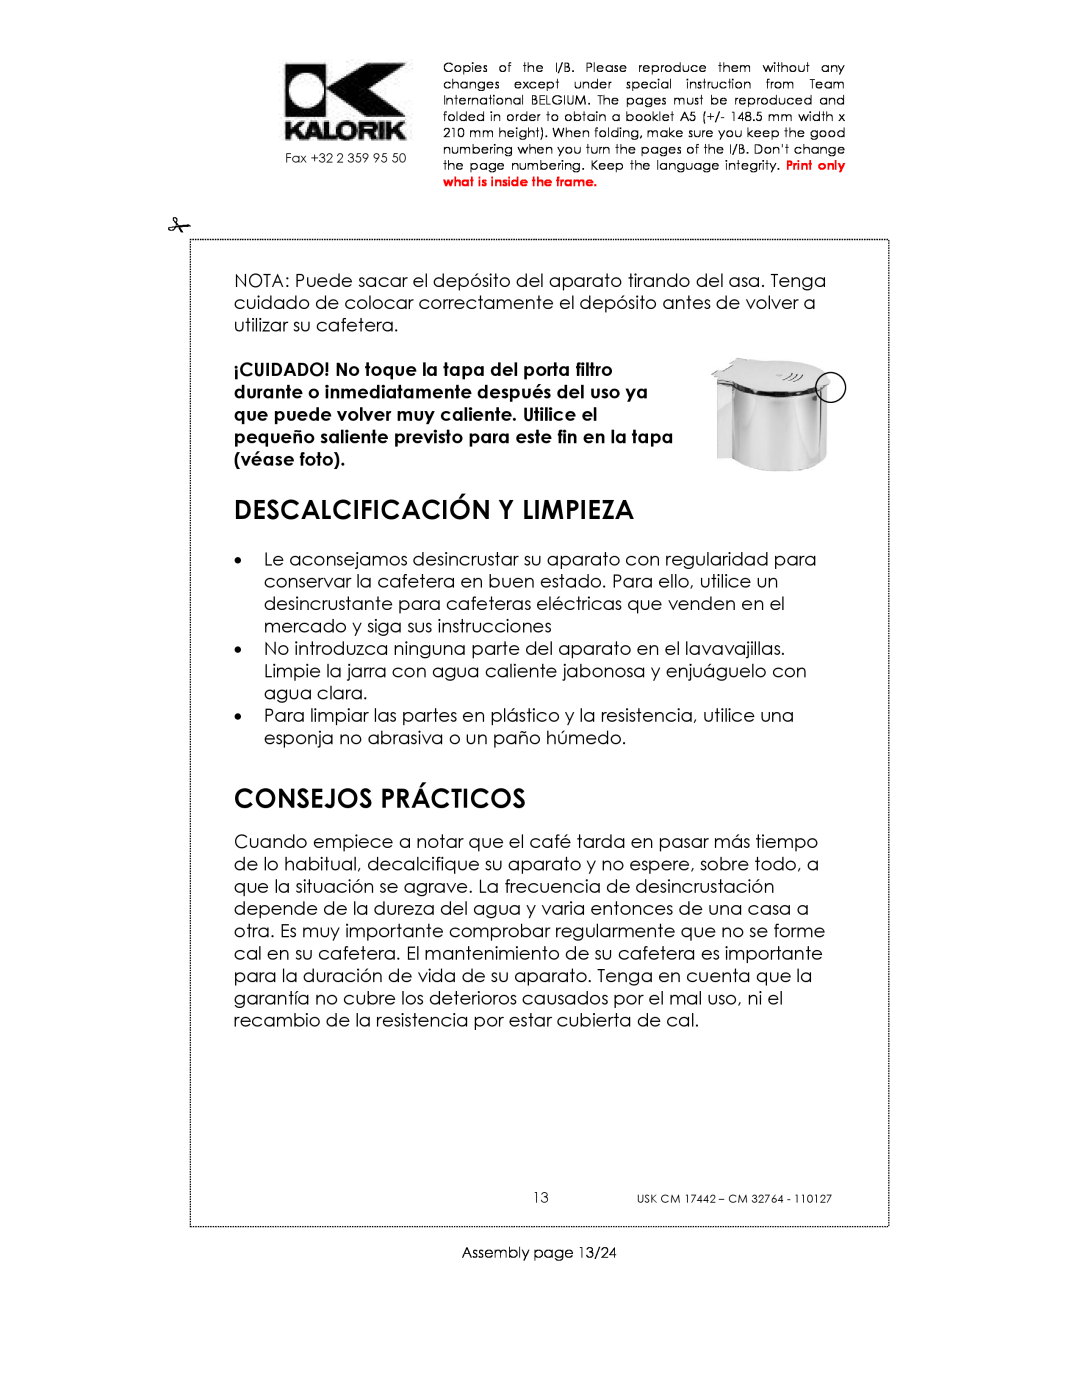 Kalorik USK CM 32764, USK CM 17442 manual Descalcificación Y Limpieza, Consejos Prácticos, Assembly page 13/24 